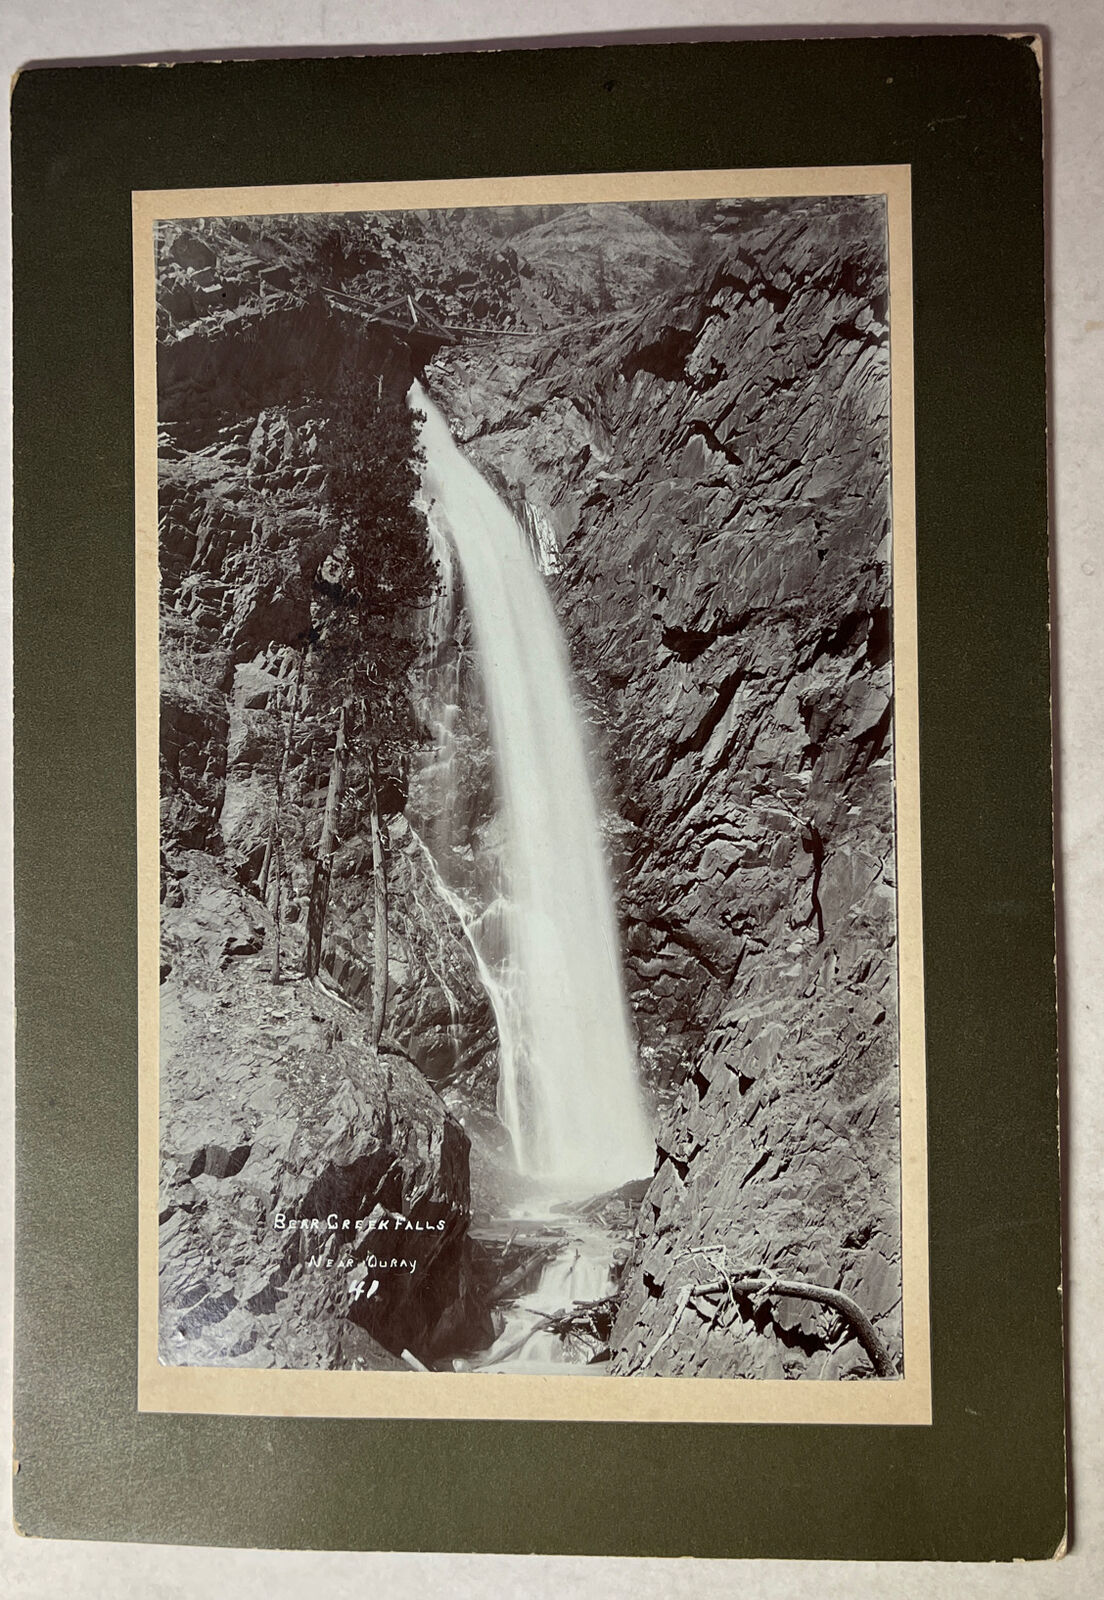 Bear Creek Falls Ouray Colorado cabinet photo 5 X 7.5